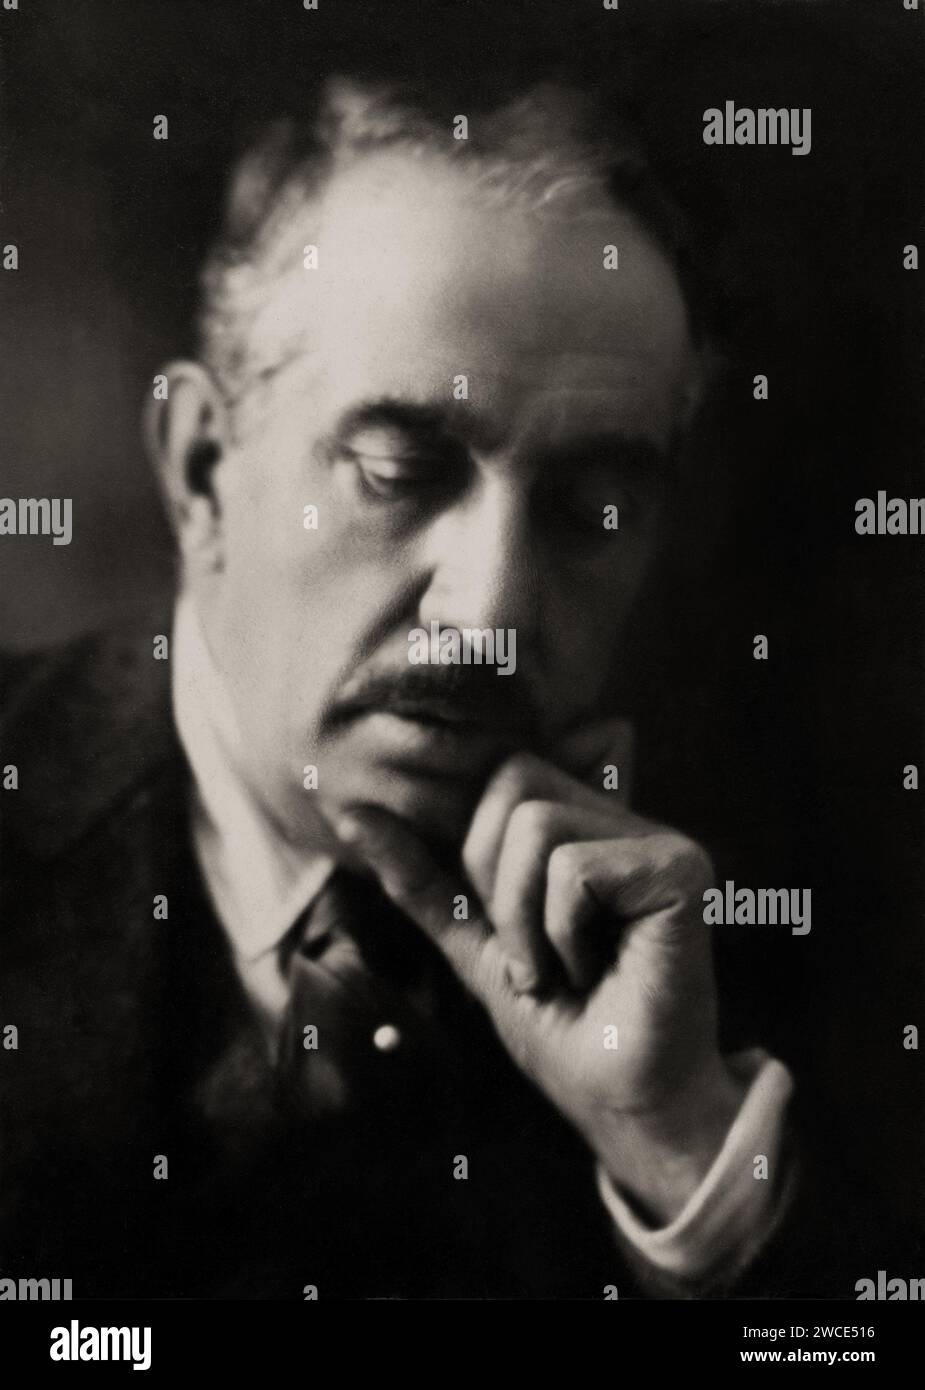 1924 c., VIAREGGIO , ITALIA : il celebre compositore italiano GIACOMO PUCCINI ( 1858 - 1924 ). Foto di Giuseppe Magrini , Viareggio . - STORIA - FOTO STORICHE - OPERA LIRICA - compagne - MUSICA - ritratto - baffi - baffi - CLASSICA - compagne LIRICO - ritratto - MUSICISTA - MUSICA - ARCHIVIO GBB Foto Stock